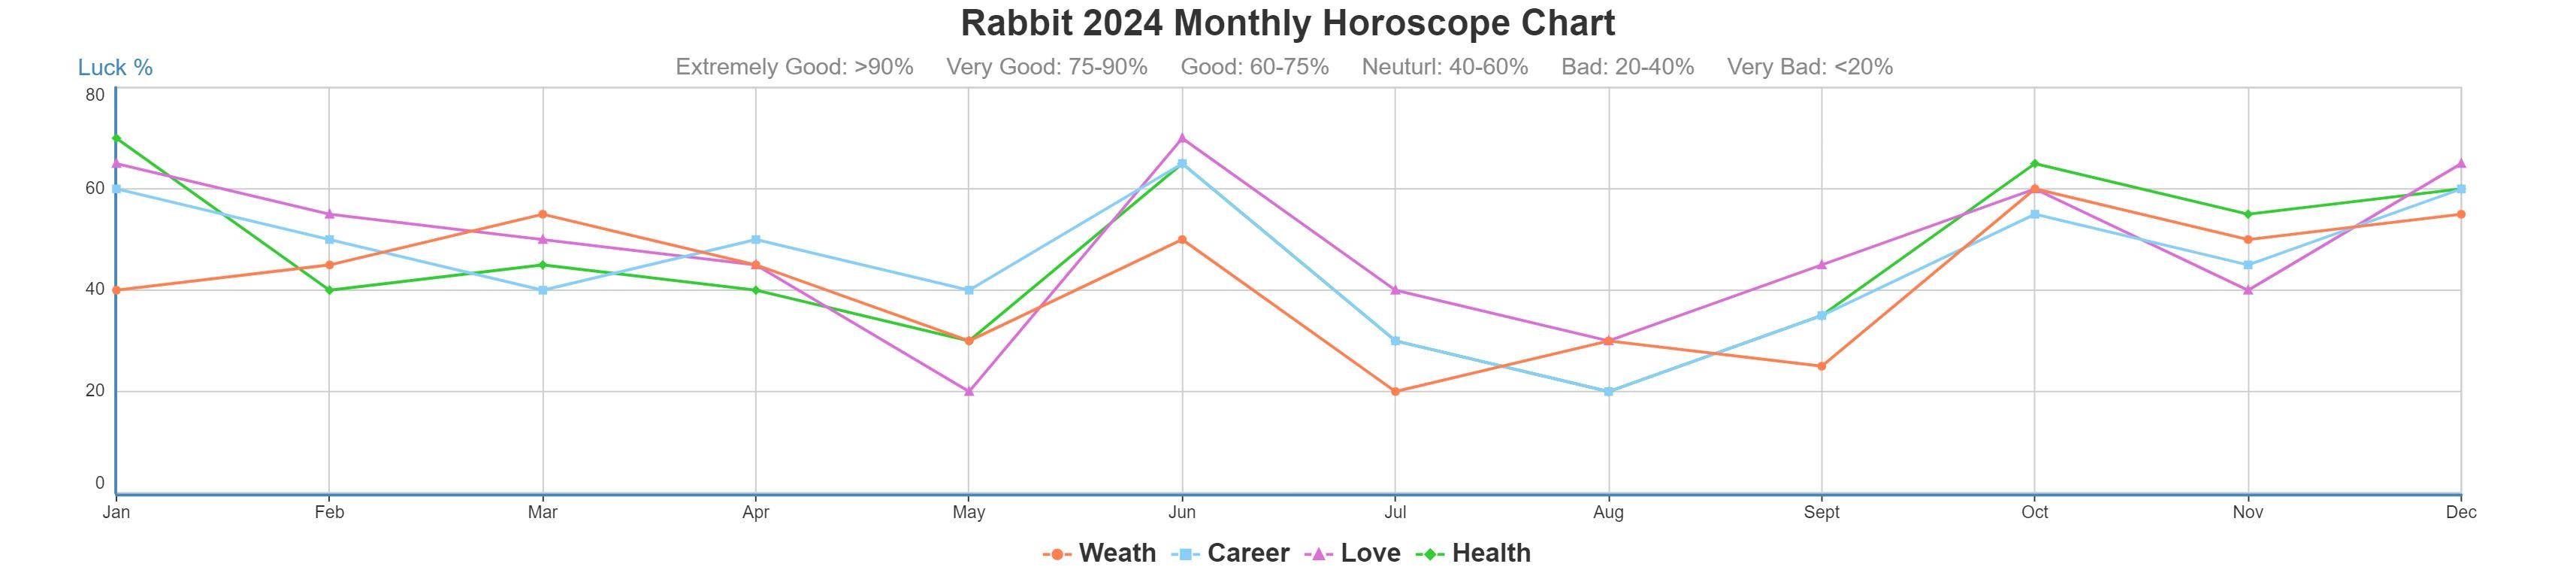 Rabbit 2024 monthly horoscope